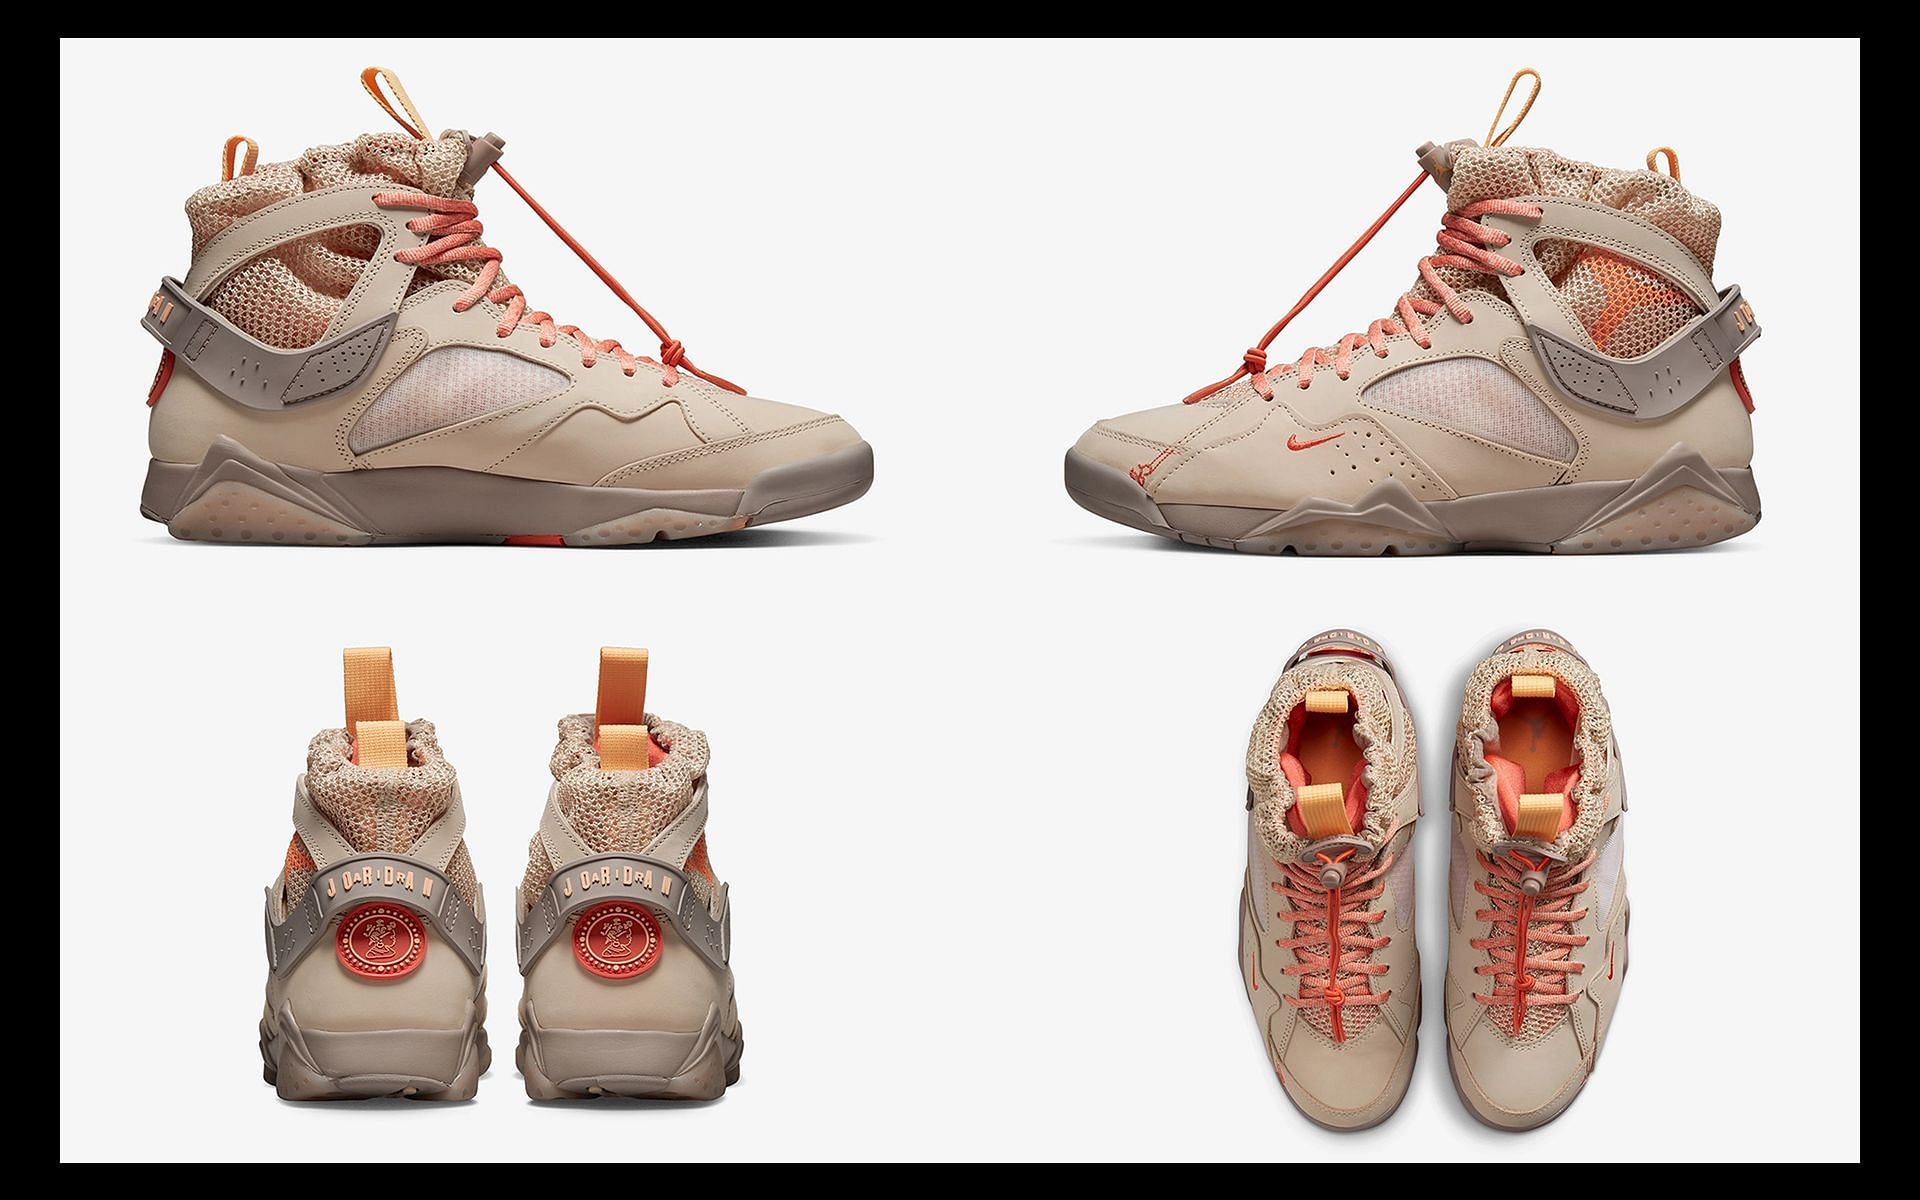 Details of the upcoming Bephies Beauty Supply x Air Jordan 7 SP sneakers (Image via Sportskeeda)